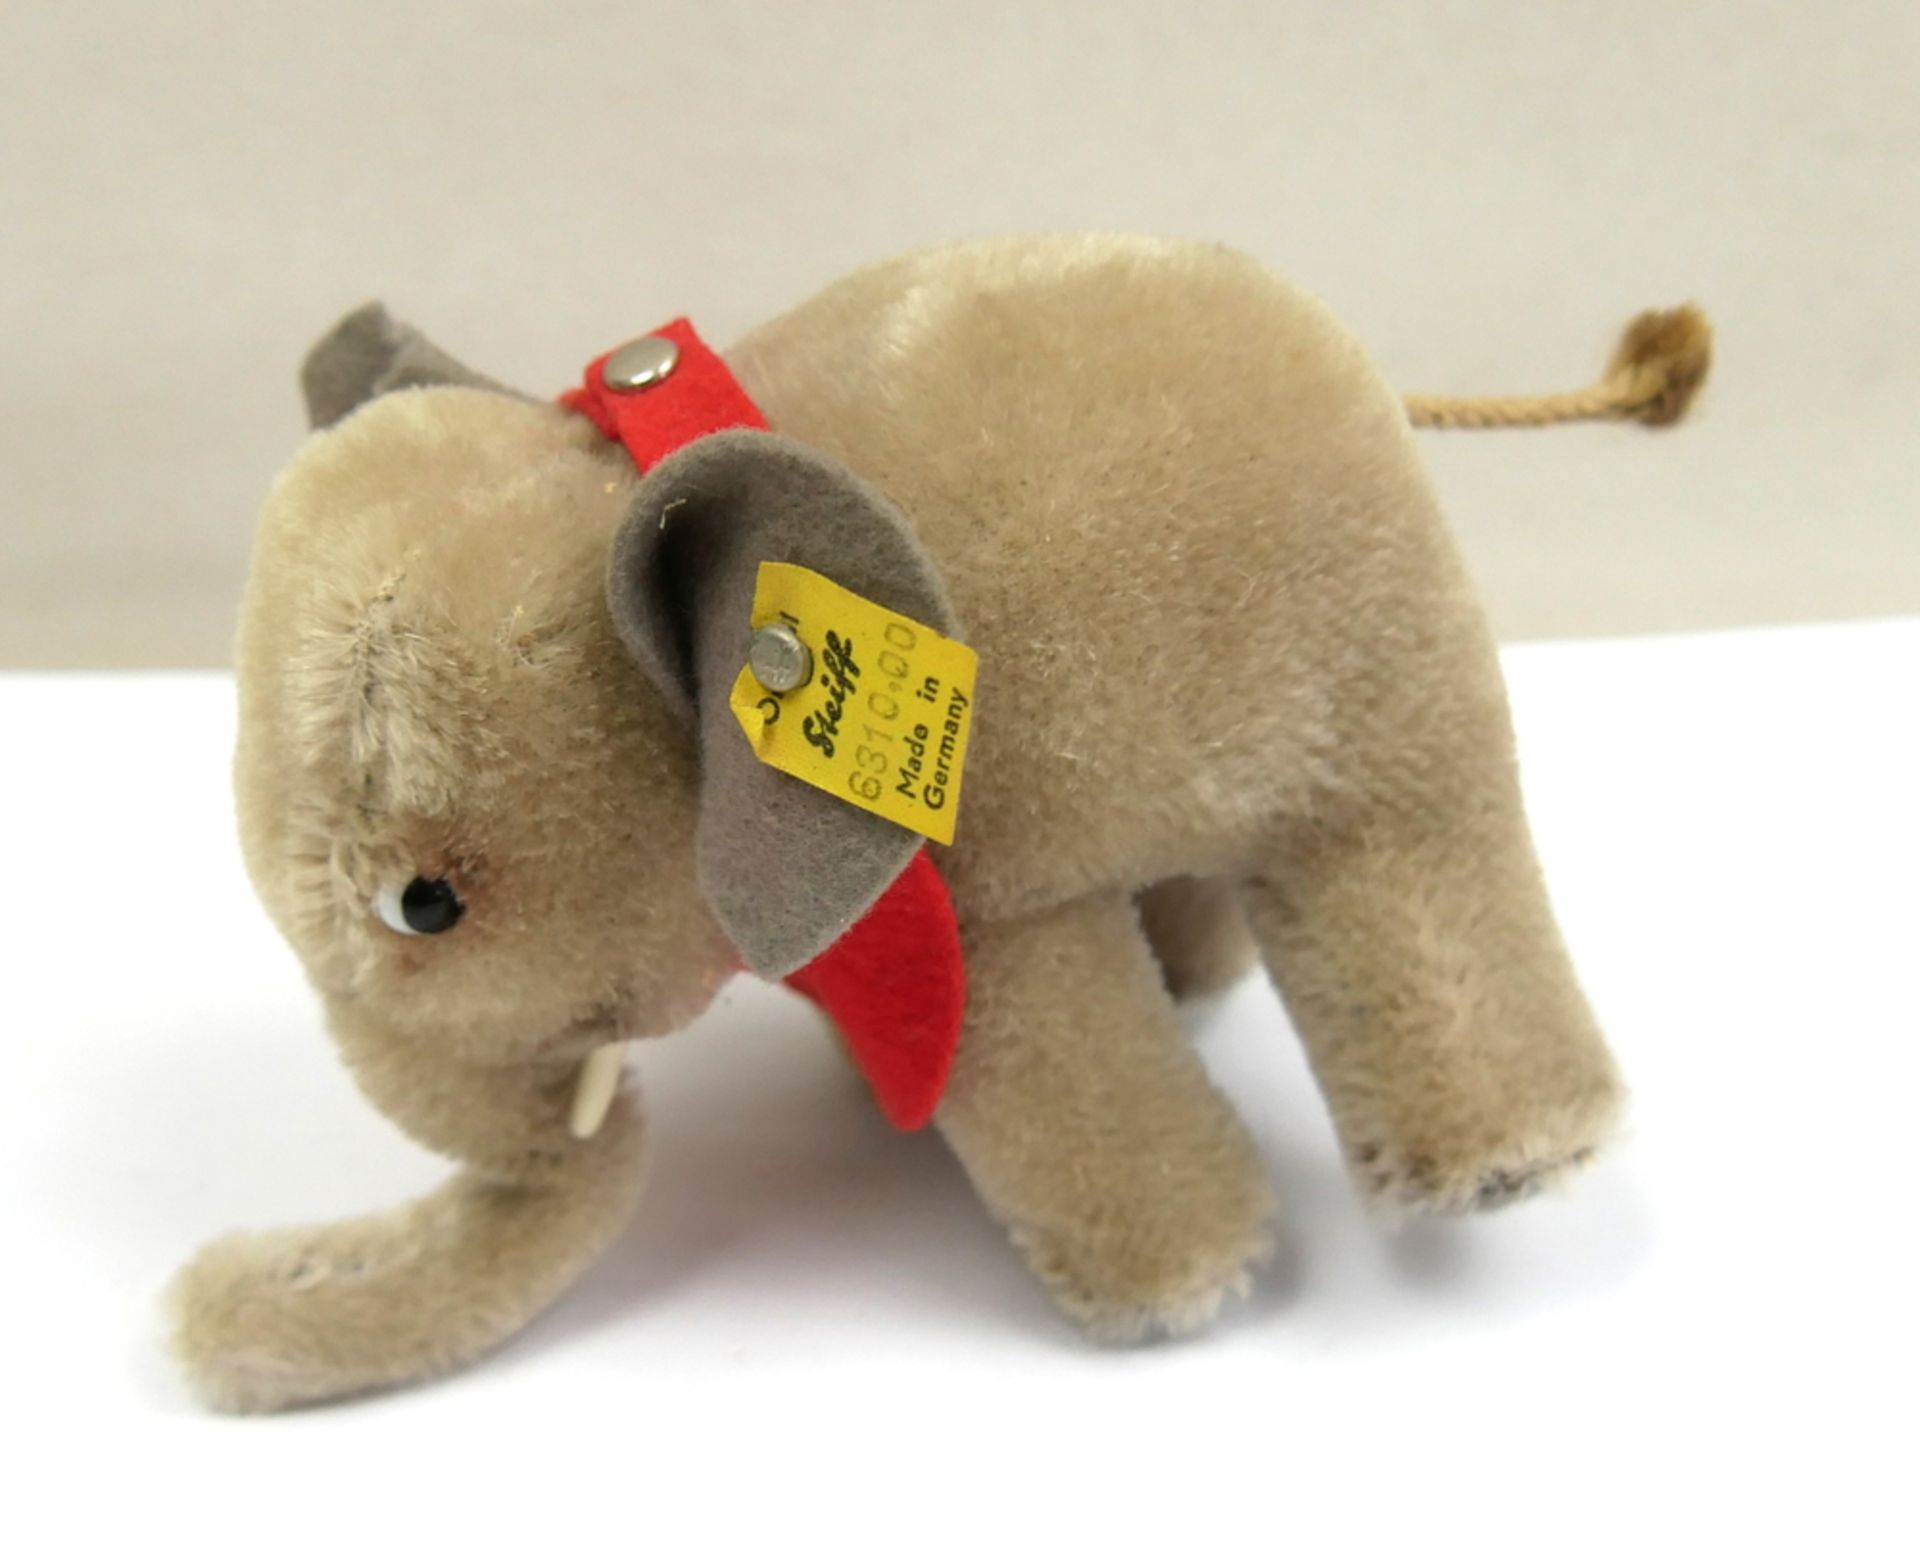 Steiff kleiner Elefant mit silbernen Knopf und Fahne Nr. 6310.00, bespielter Zustand. Wohl 60er